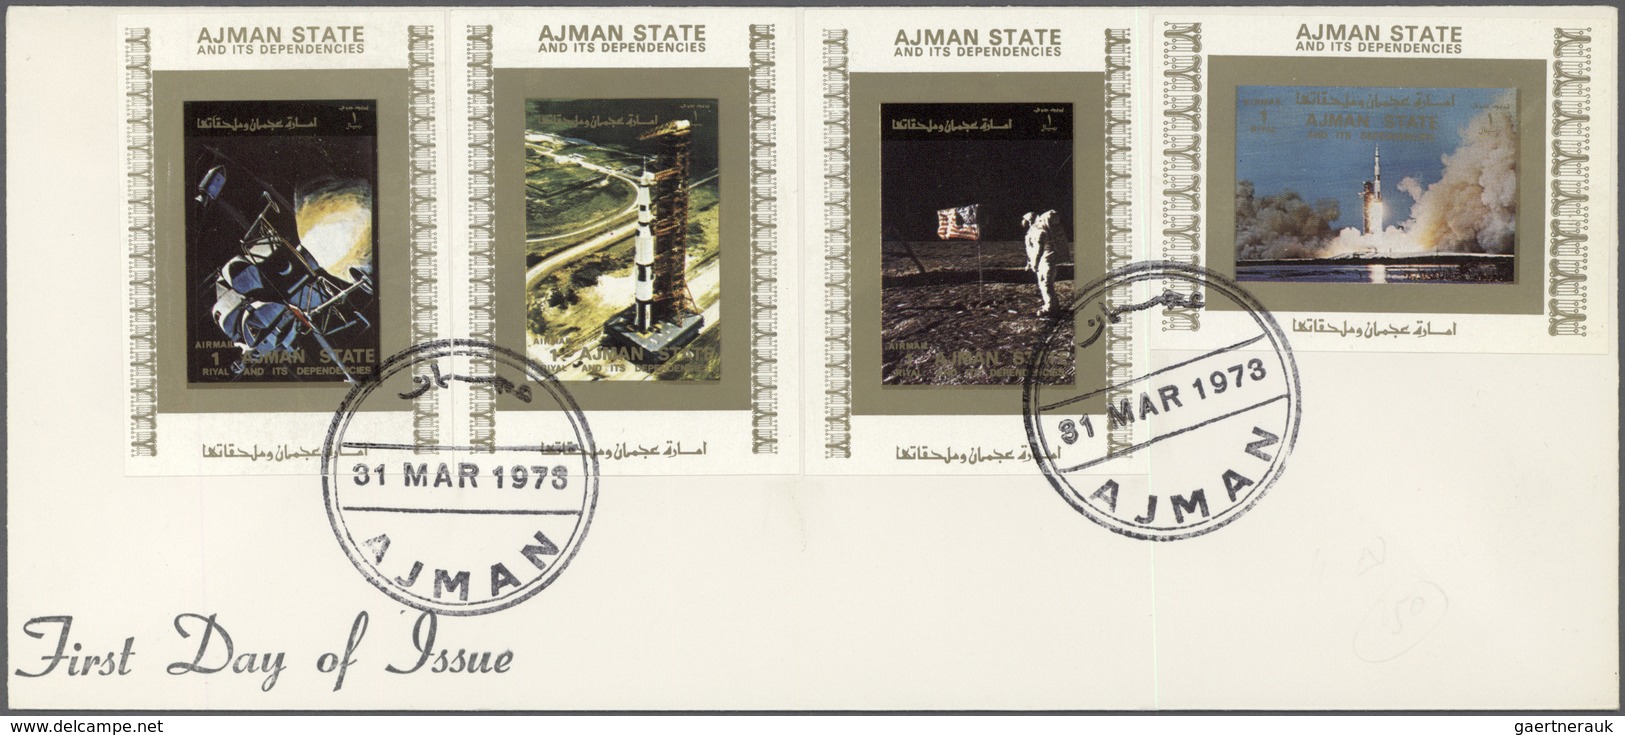 Adschman / Ajman: 1969/1973, assortment incl. f.d.c./covers, de luxe sheets, imperforate composite p